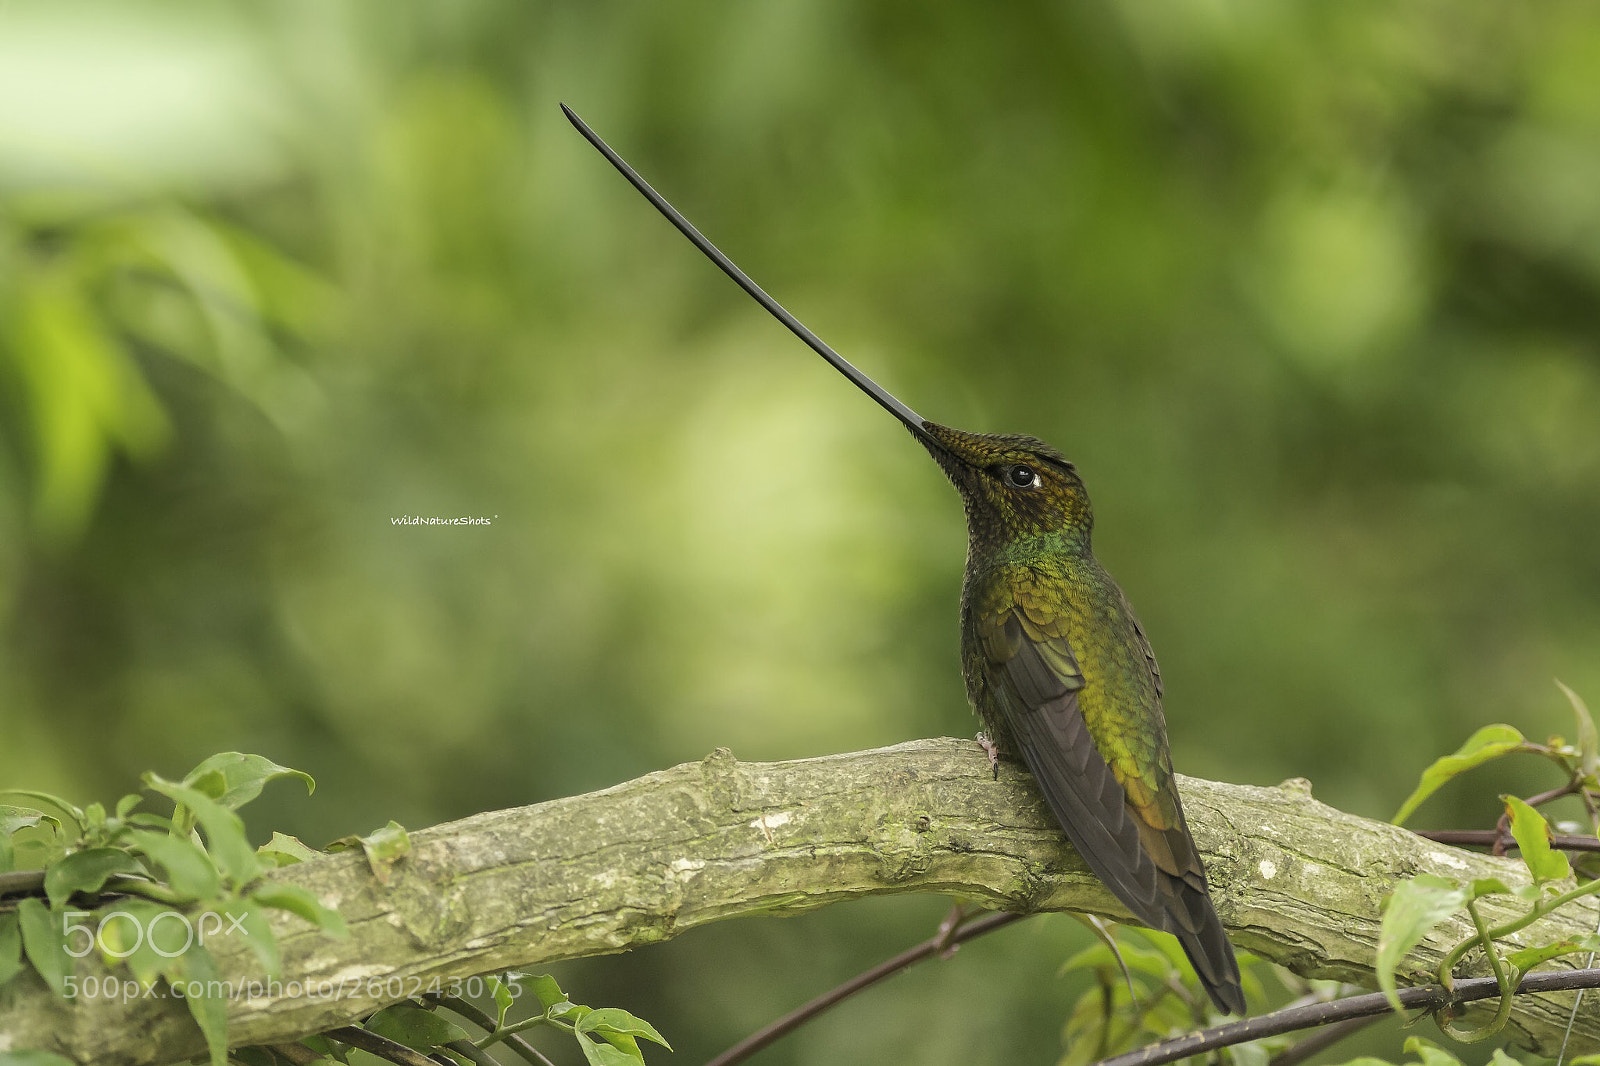 Nikon D500 sample photo. Sword-billed hummingbird photography